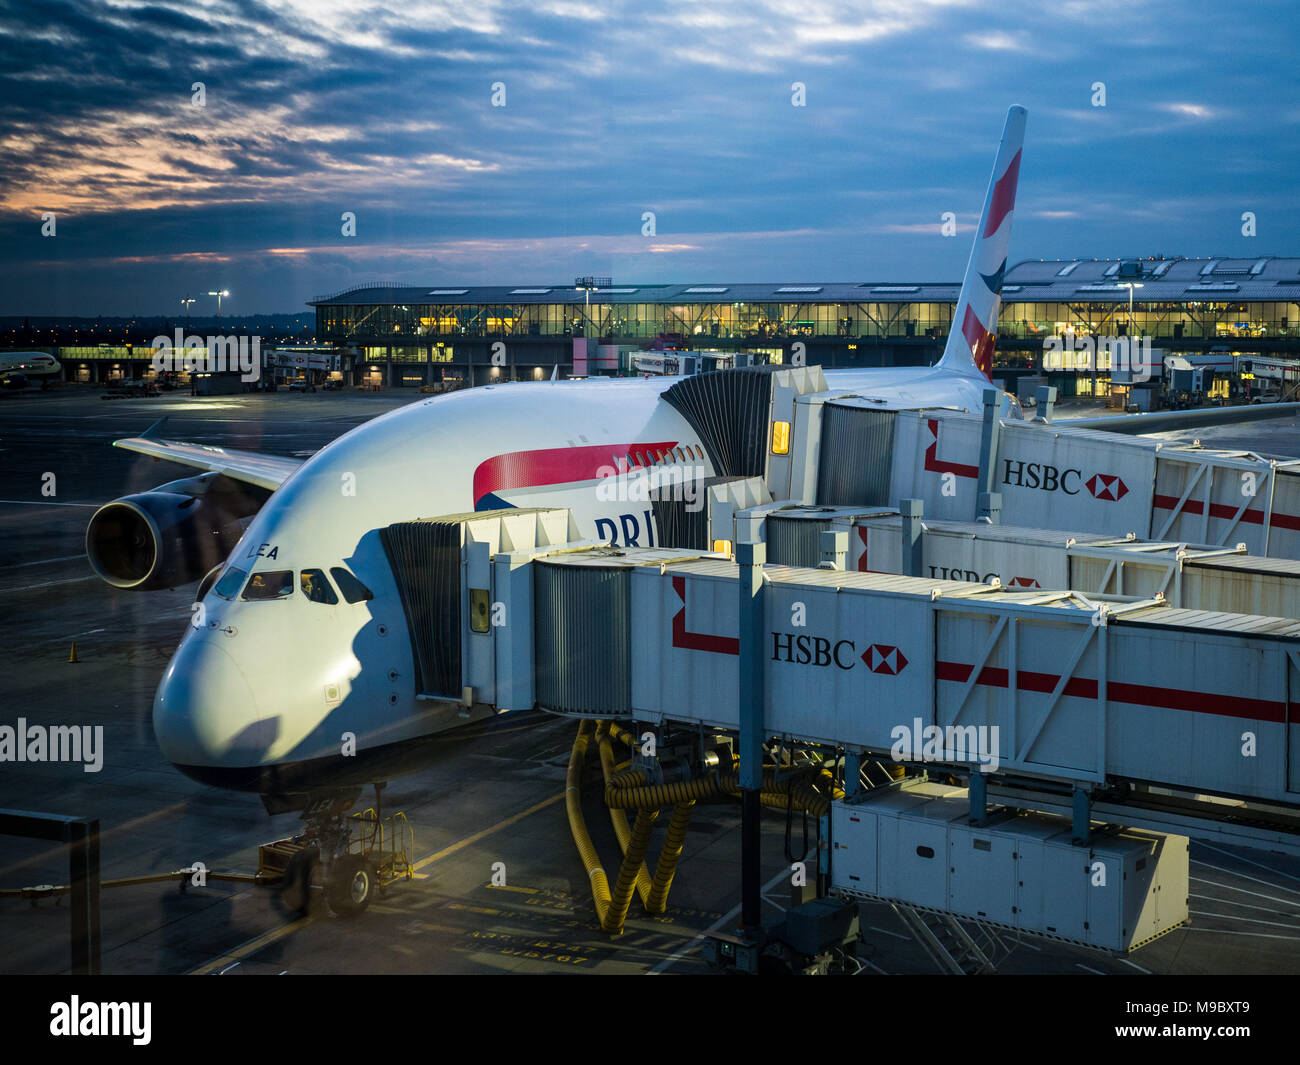 BA Airbus A380 à Heathrow Terminal 5 avant de s'envoler pour Hong Kong. Veuillez noter photo prise à travers le verre de façon légère réflexions visibles. Banque D'Images